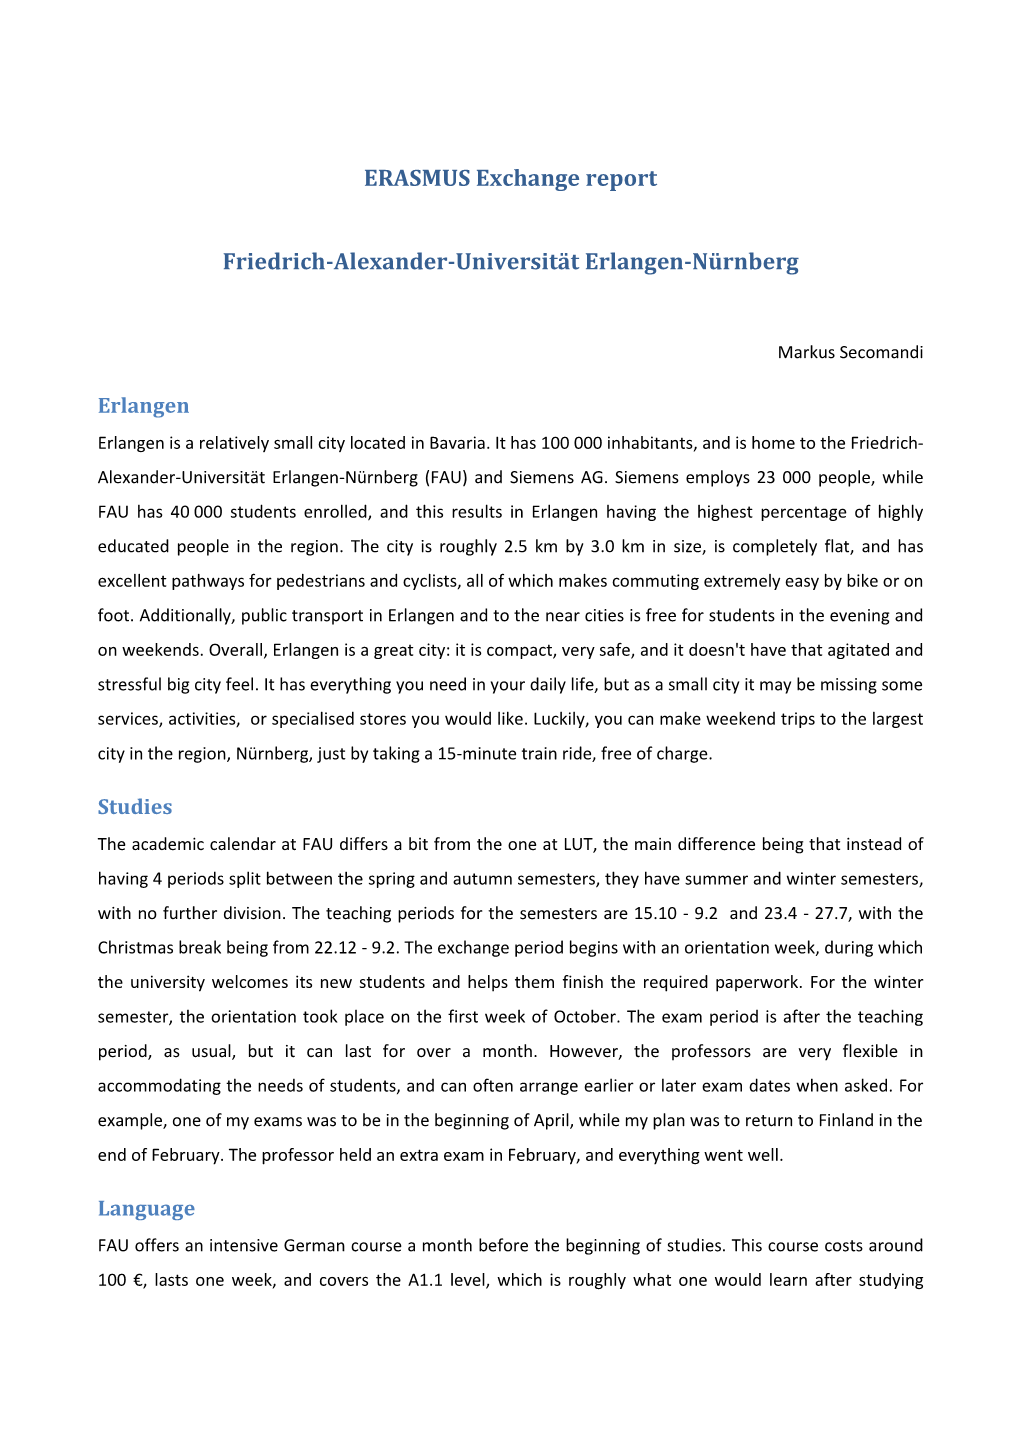 ERASMUS Exchange Report Friedrich-Alexander-Universität